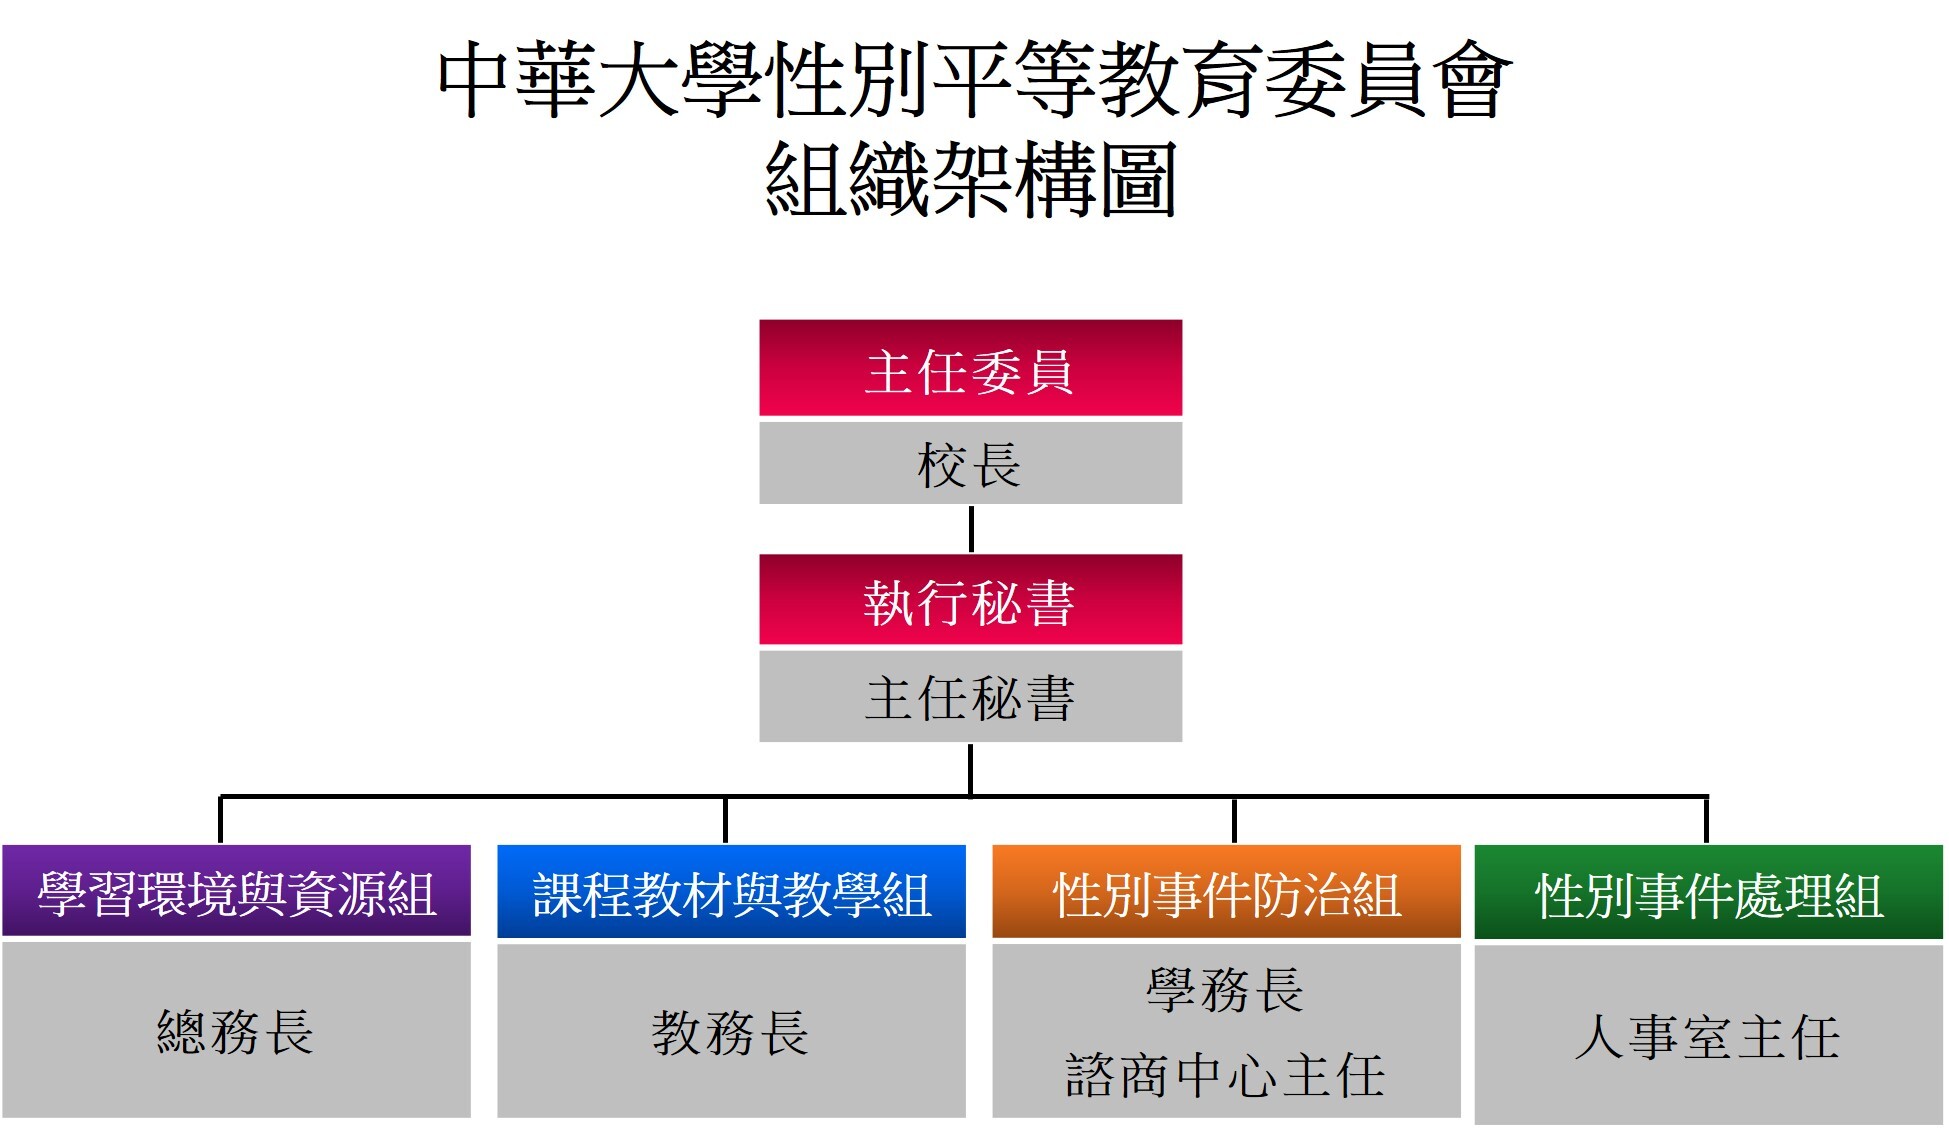 中華大學性別平等教育委員會組織架構圖